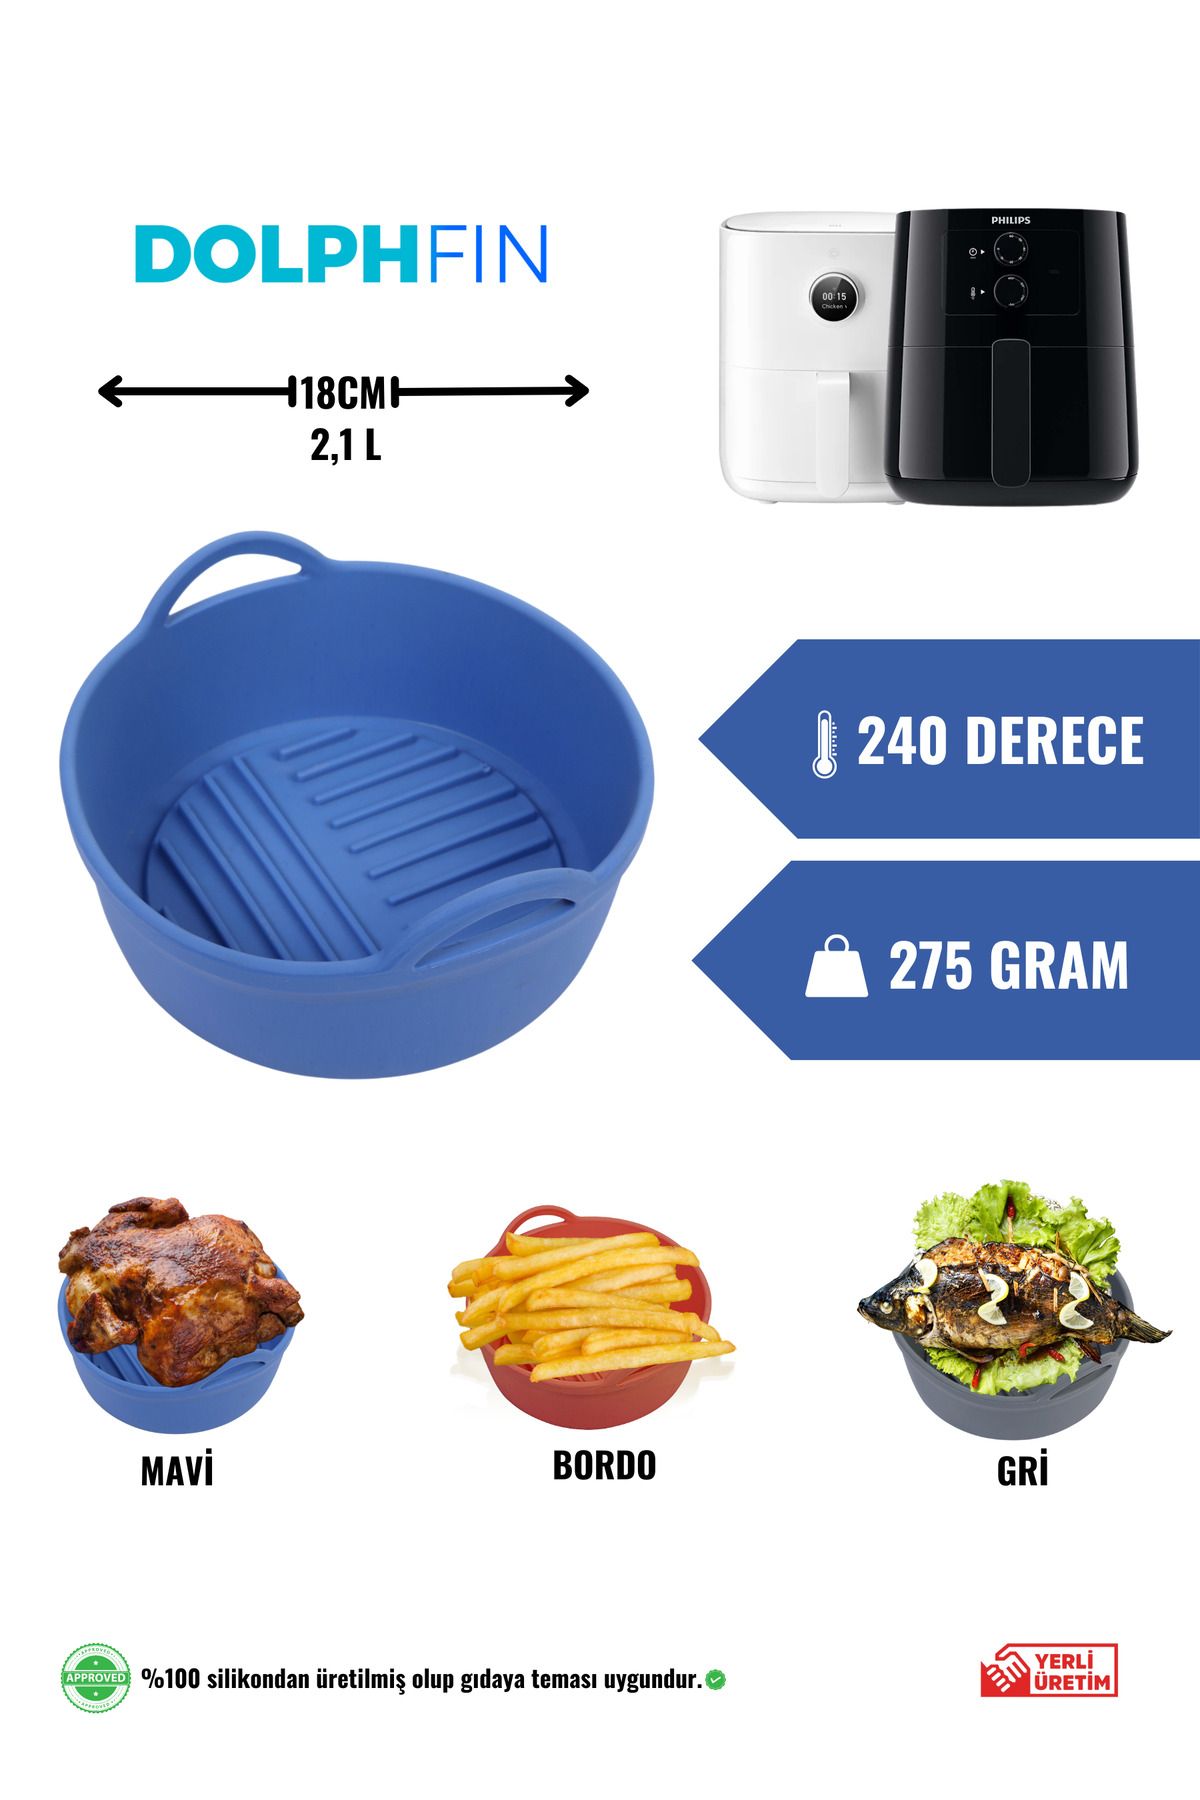 DolphFin Air Fryer Silikon Pişirme Kabı Yemek Ve Kek Kalıbı Xiaomi 3,5l Ve Philips 4,1l Uyumlu Özel Tasarım